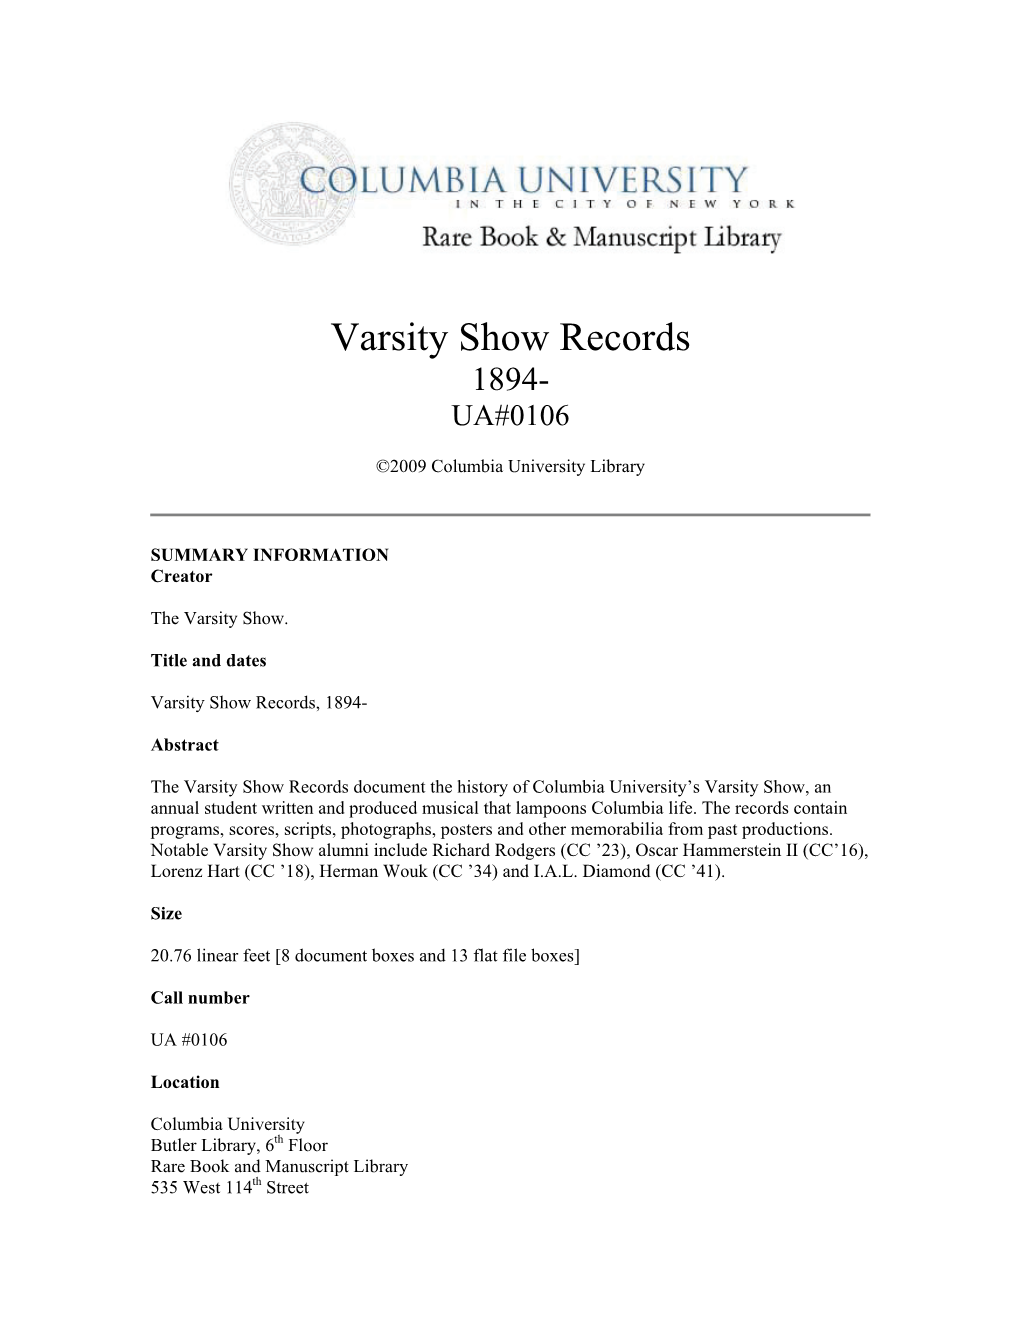 Varsity Show Records 1894- UA#0106